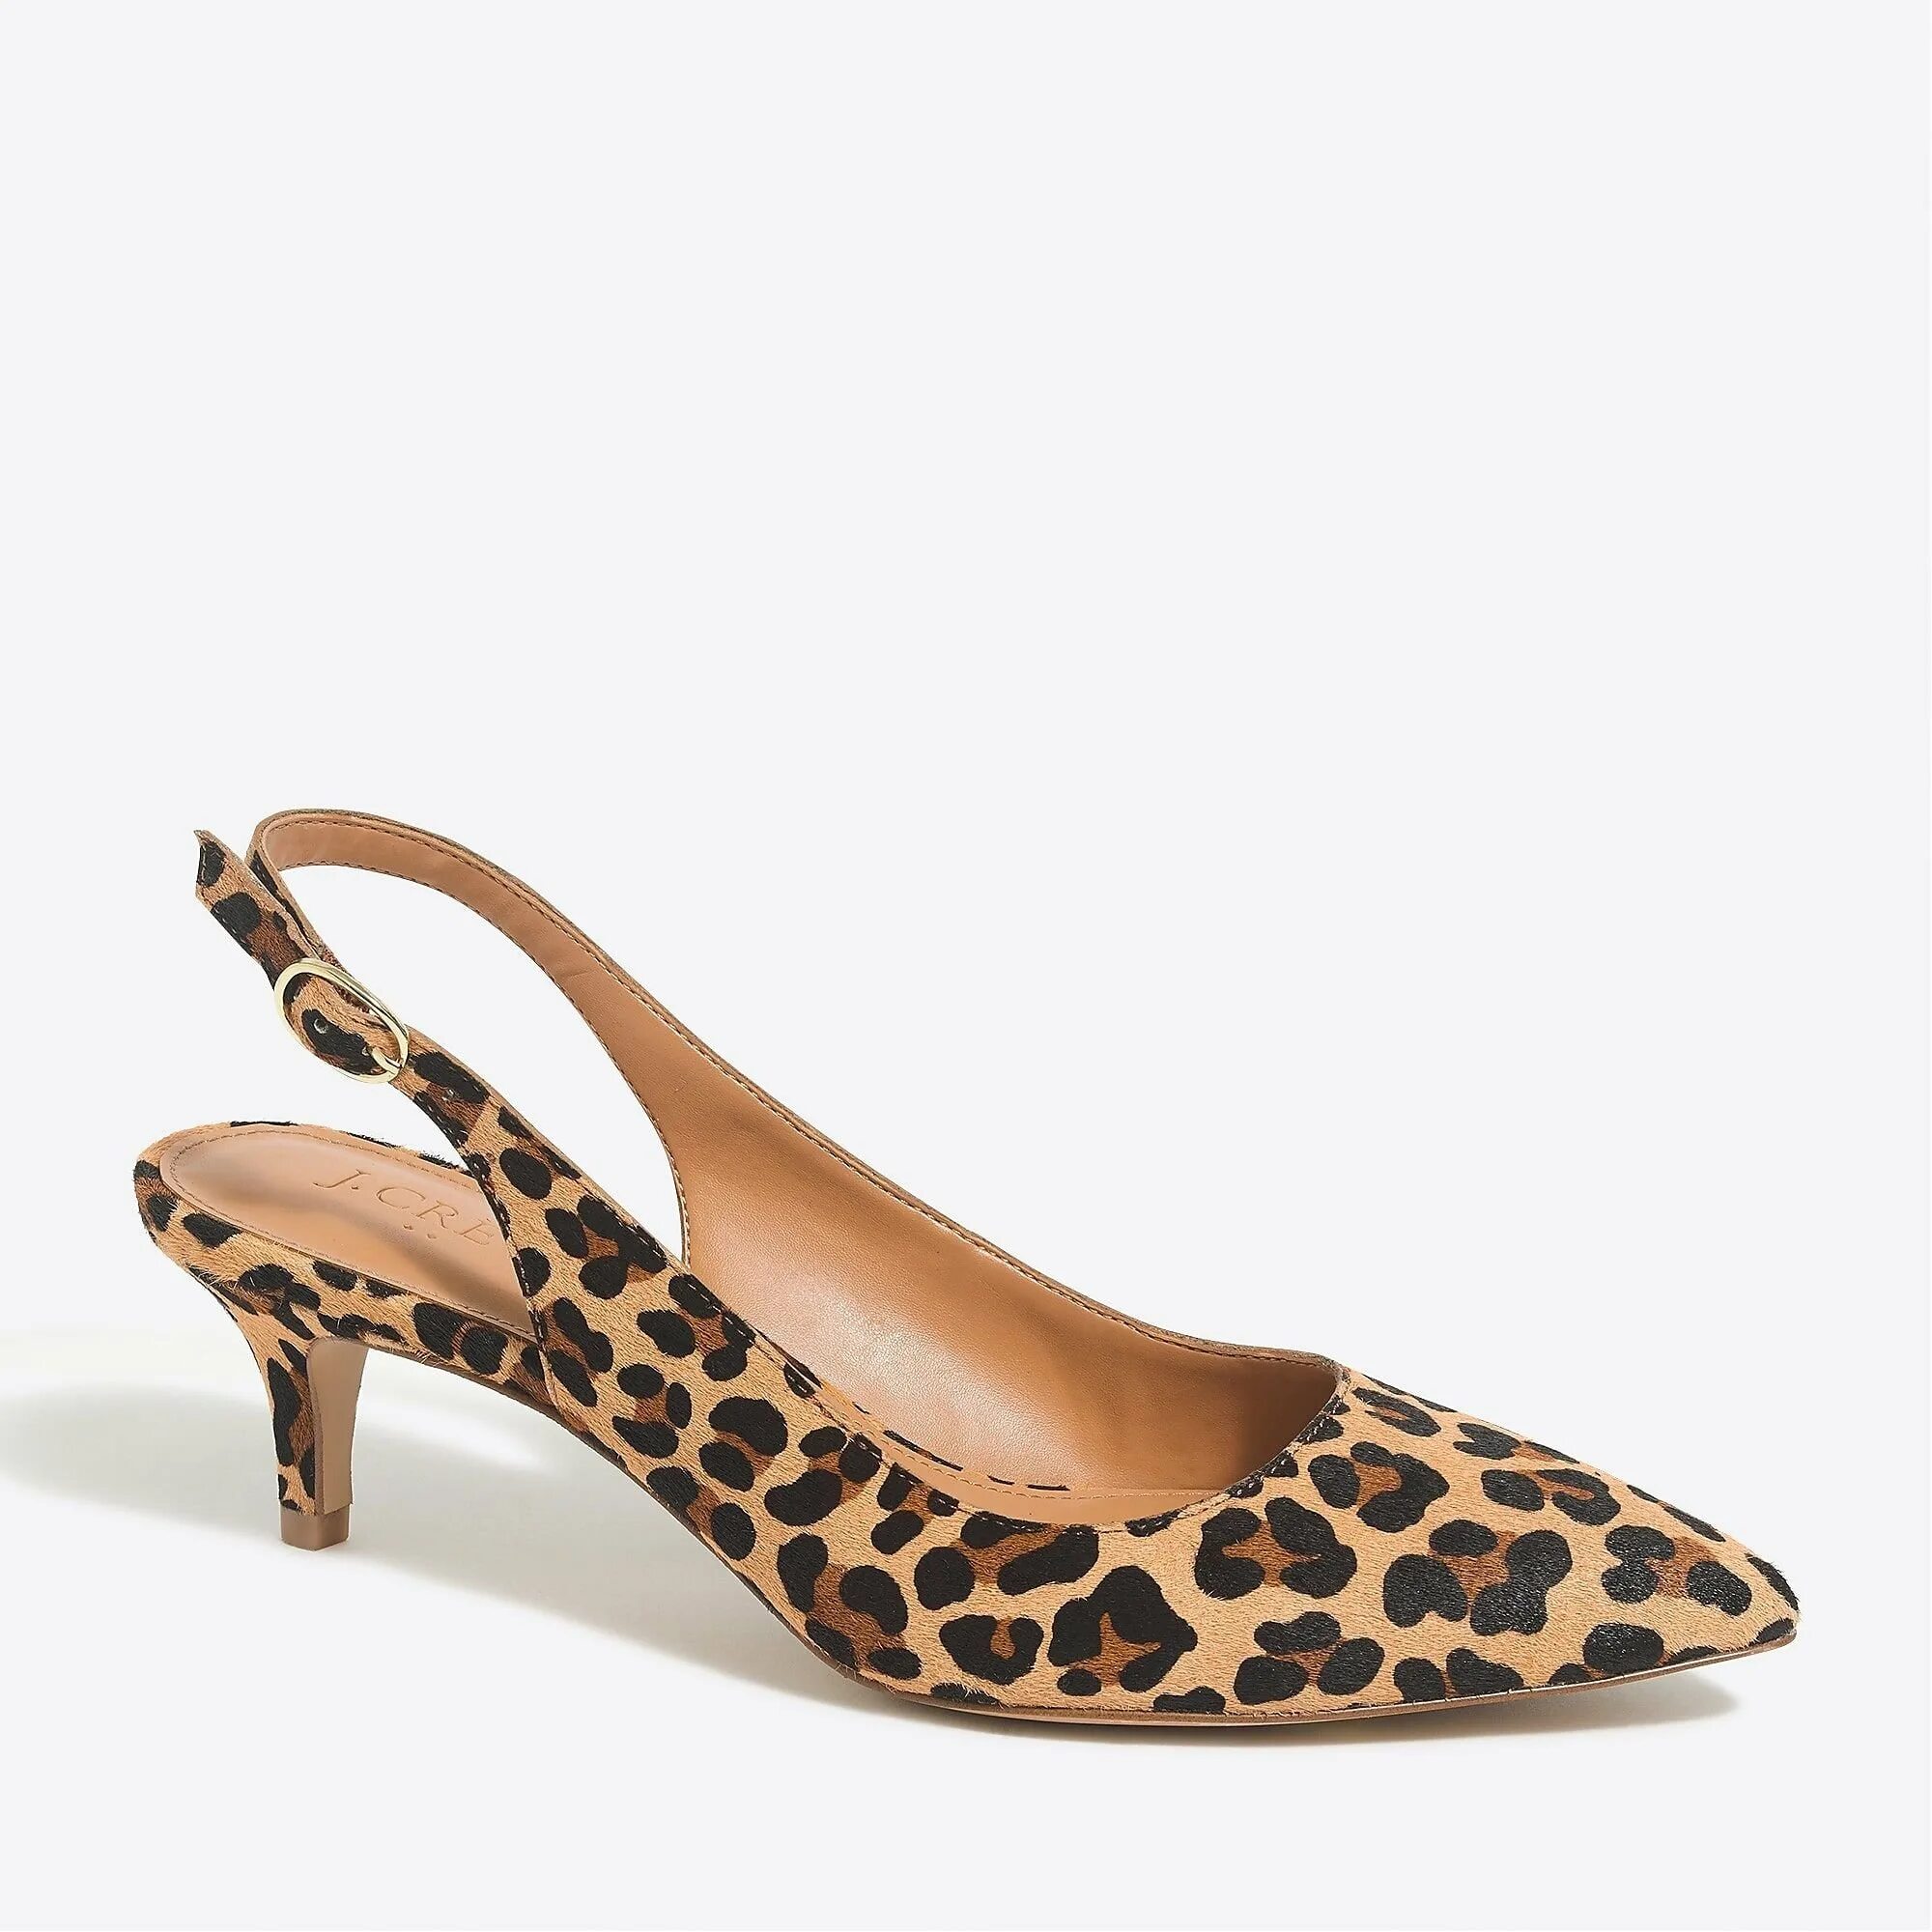 Киттен хилл. Туфли Киттен Хиллс. Каблук Киттен Хиллс. Kitten Heels обувь. Slingback Kitten Heel Shoes Leopard.